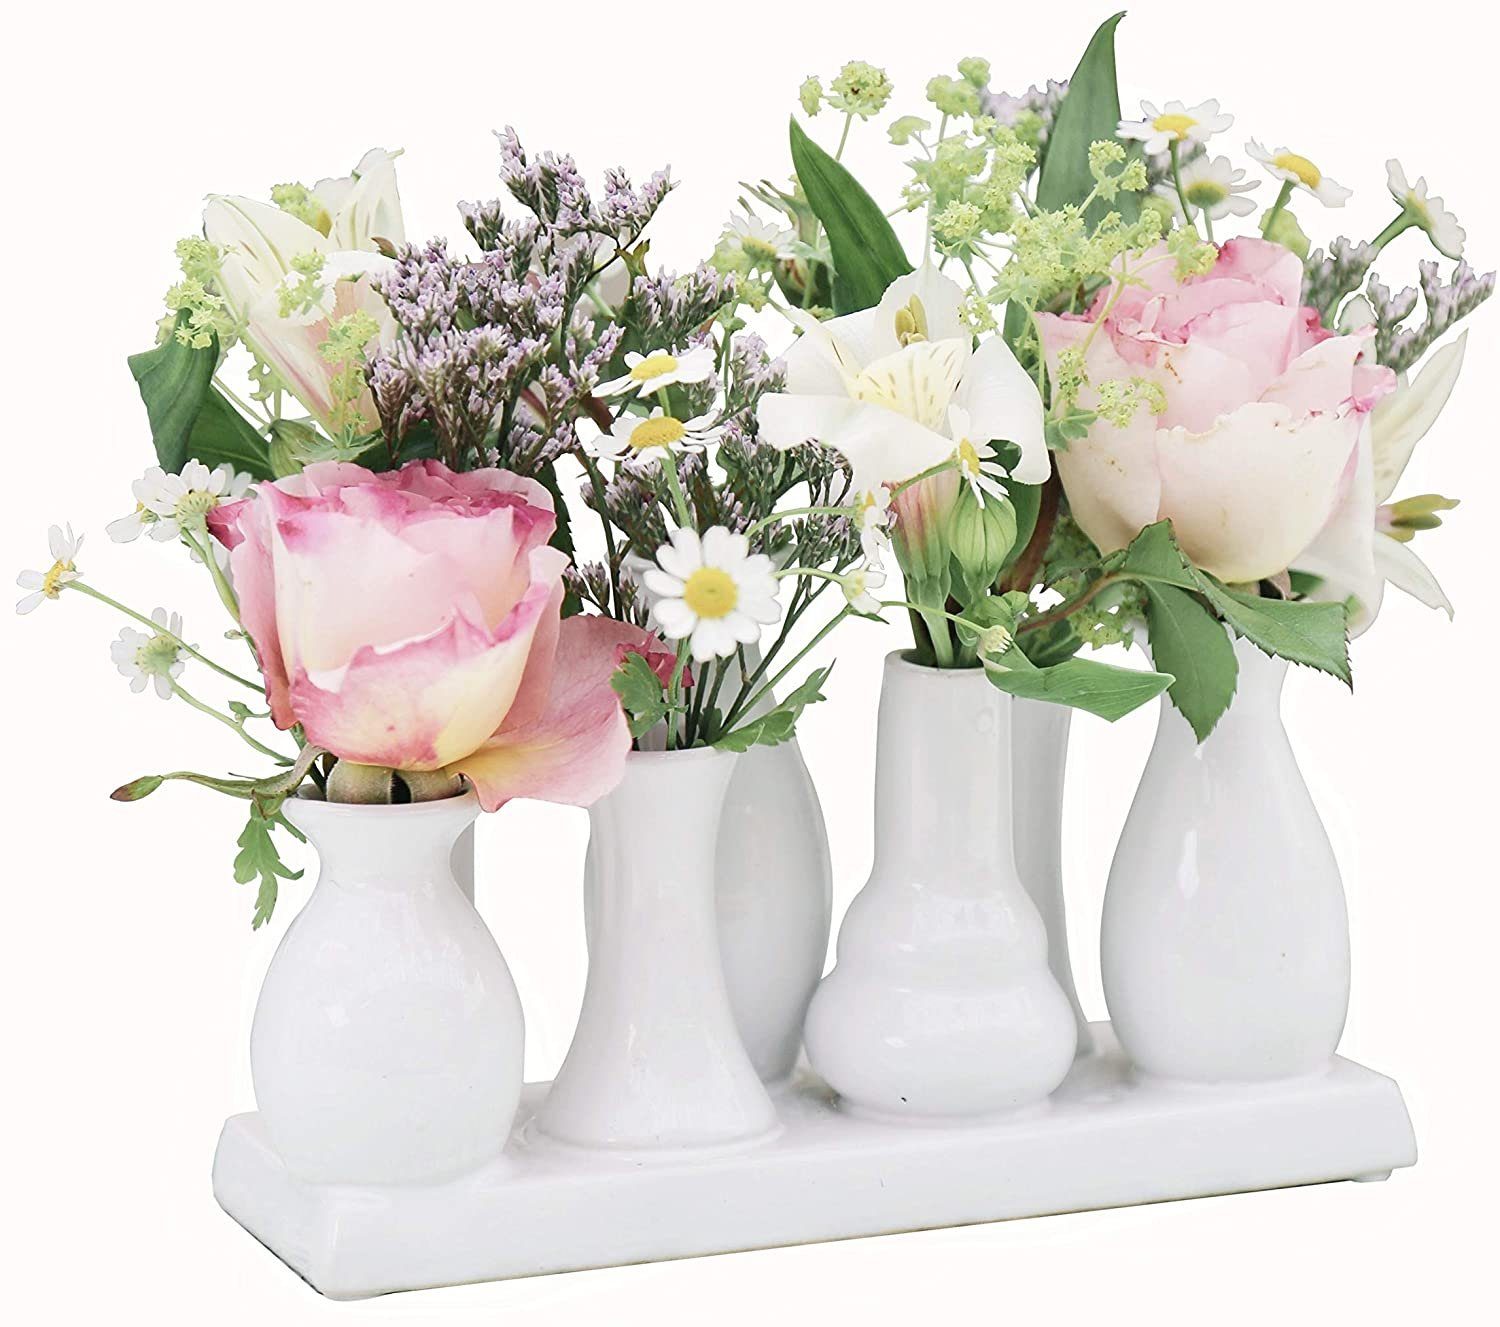 Jinfa Dekovase Handgefertigte kleine Keramik Deko Blumenvasen (7 Vasen Set weiß), verbunden auf auf einem Tablett